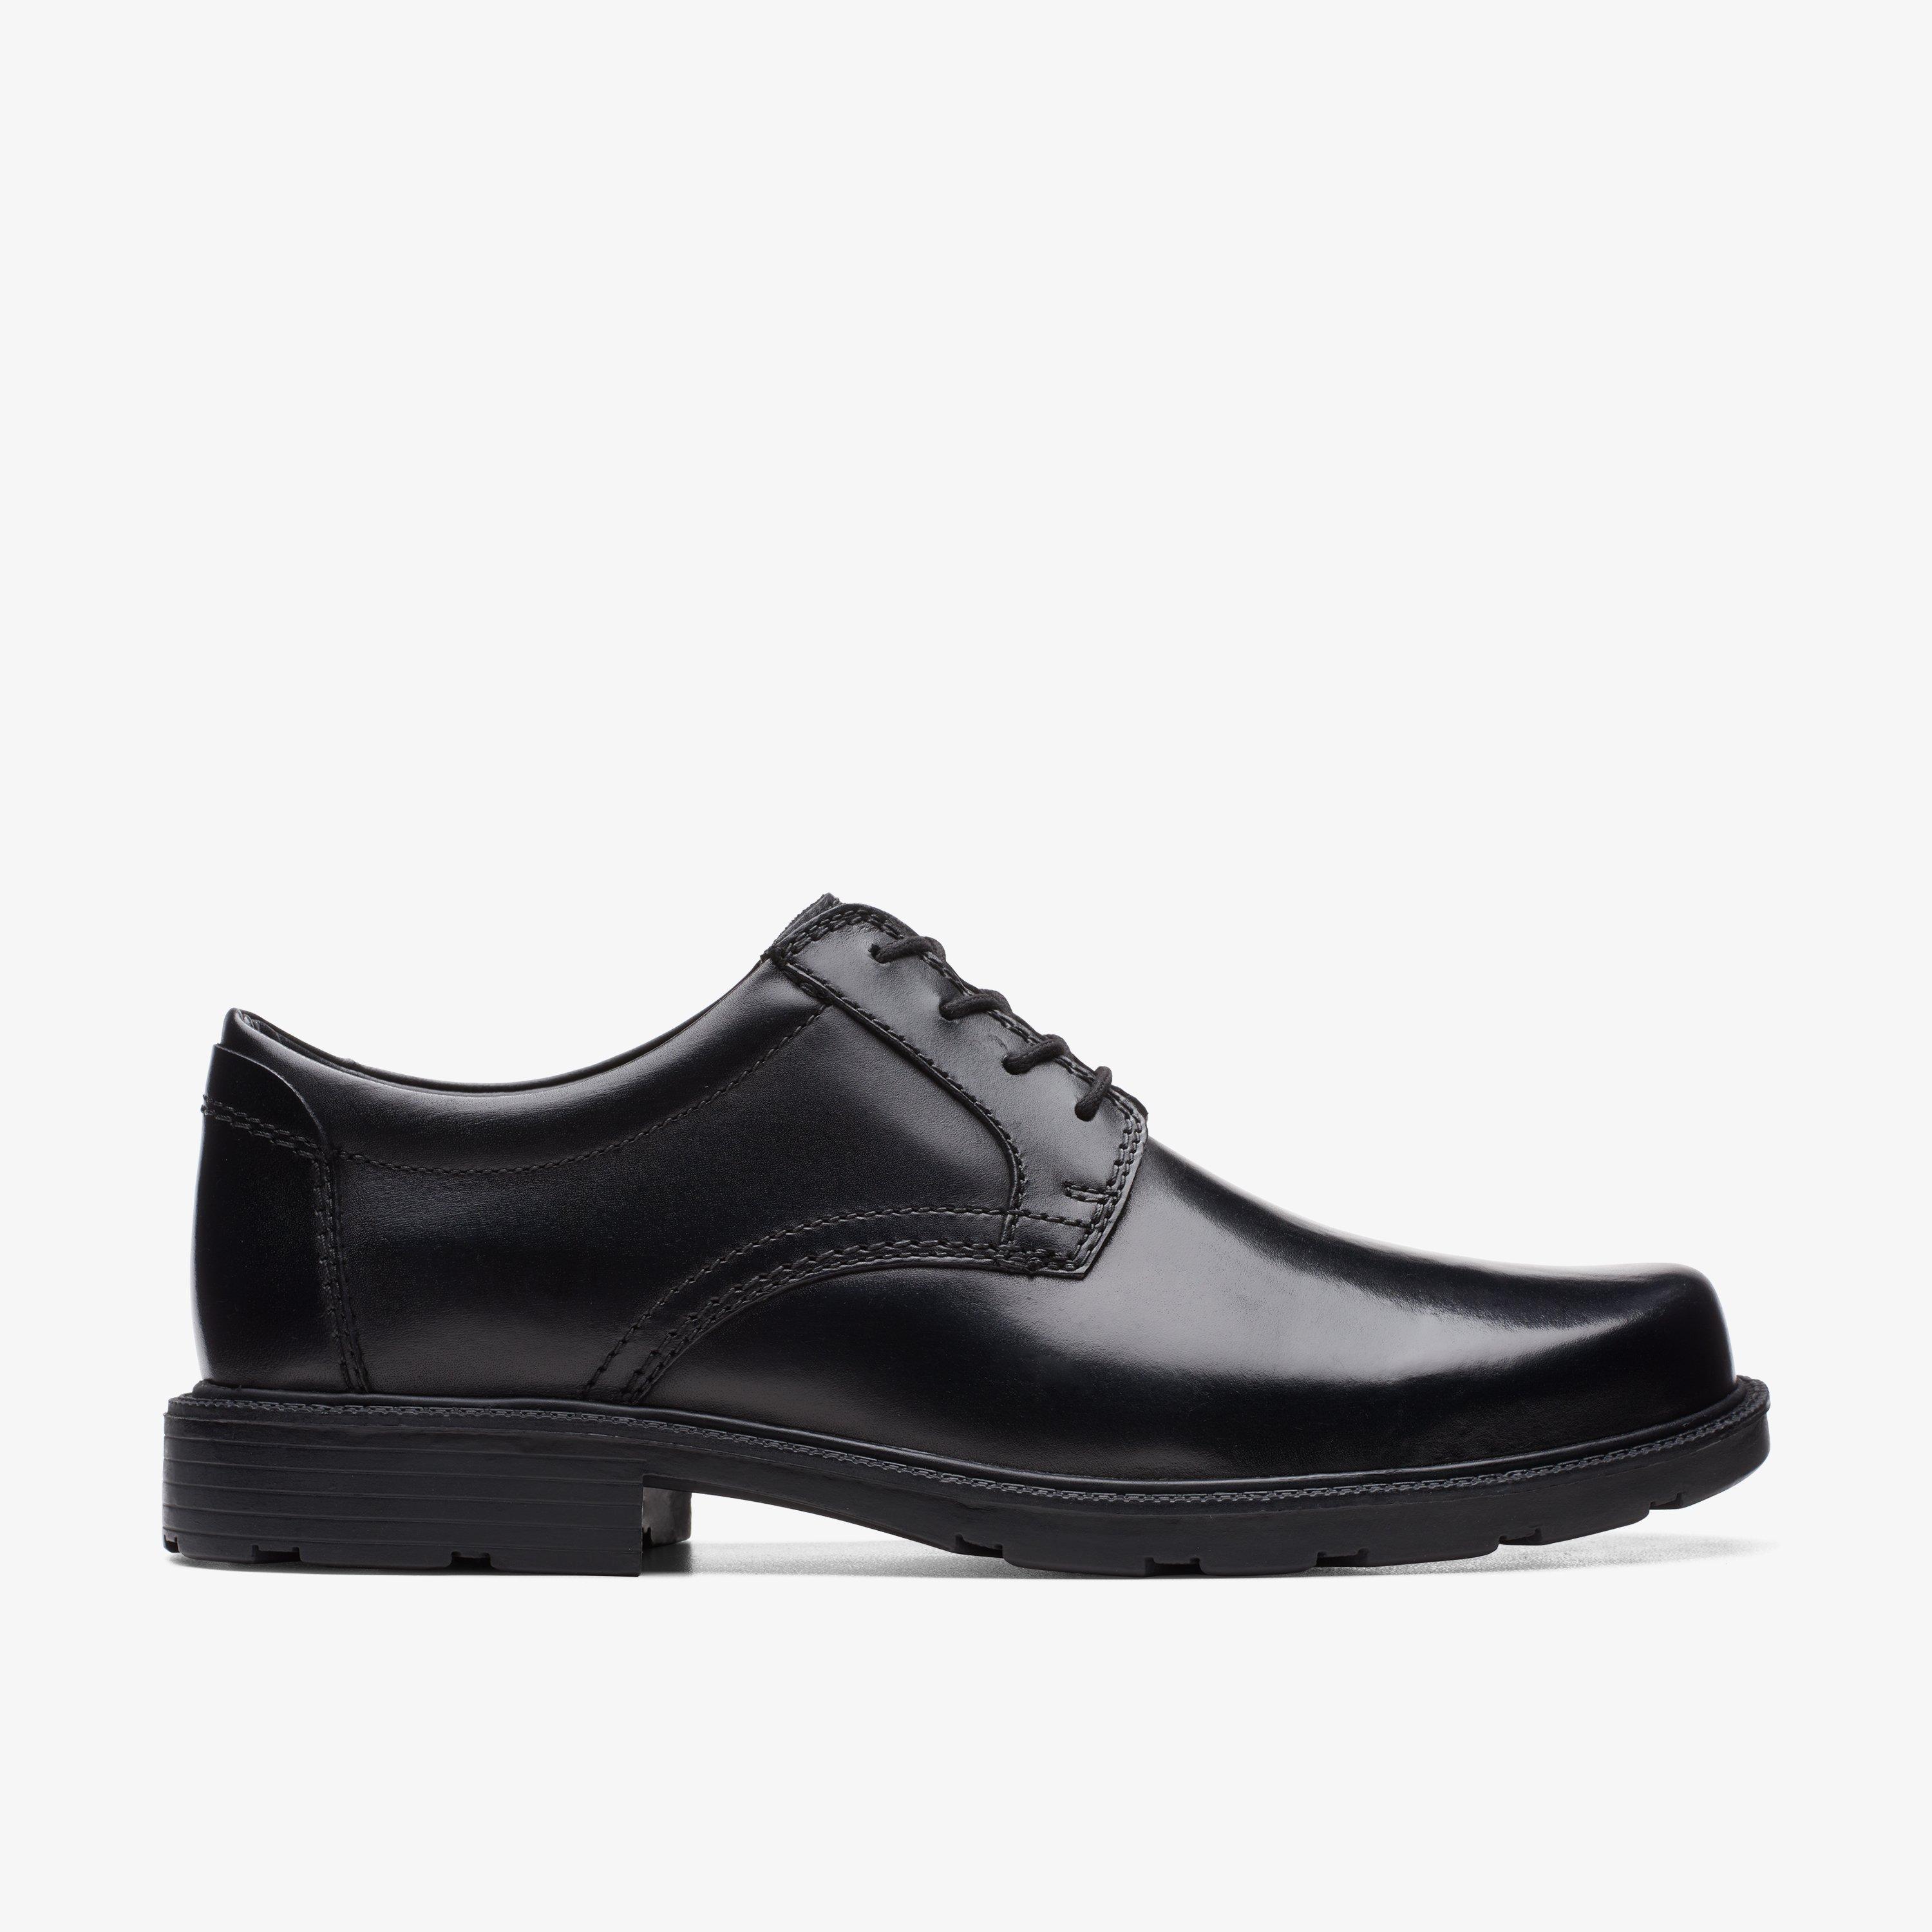 Size 12 Clarks Kerton Lace Black Leather shoes